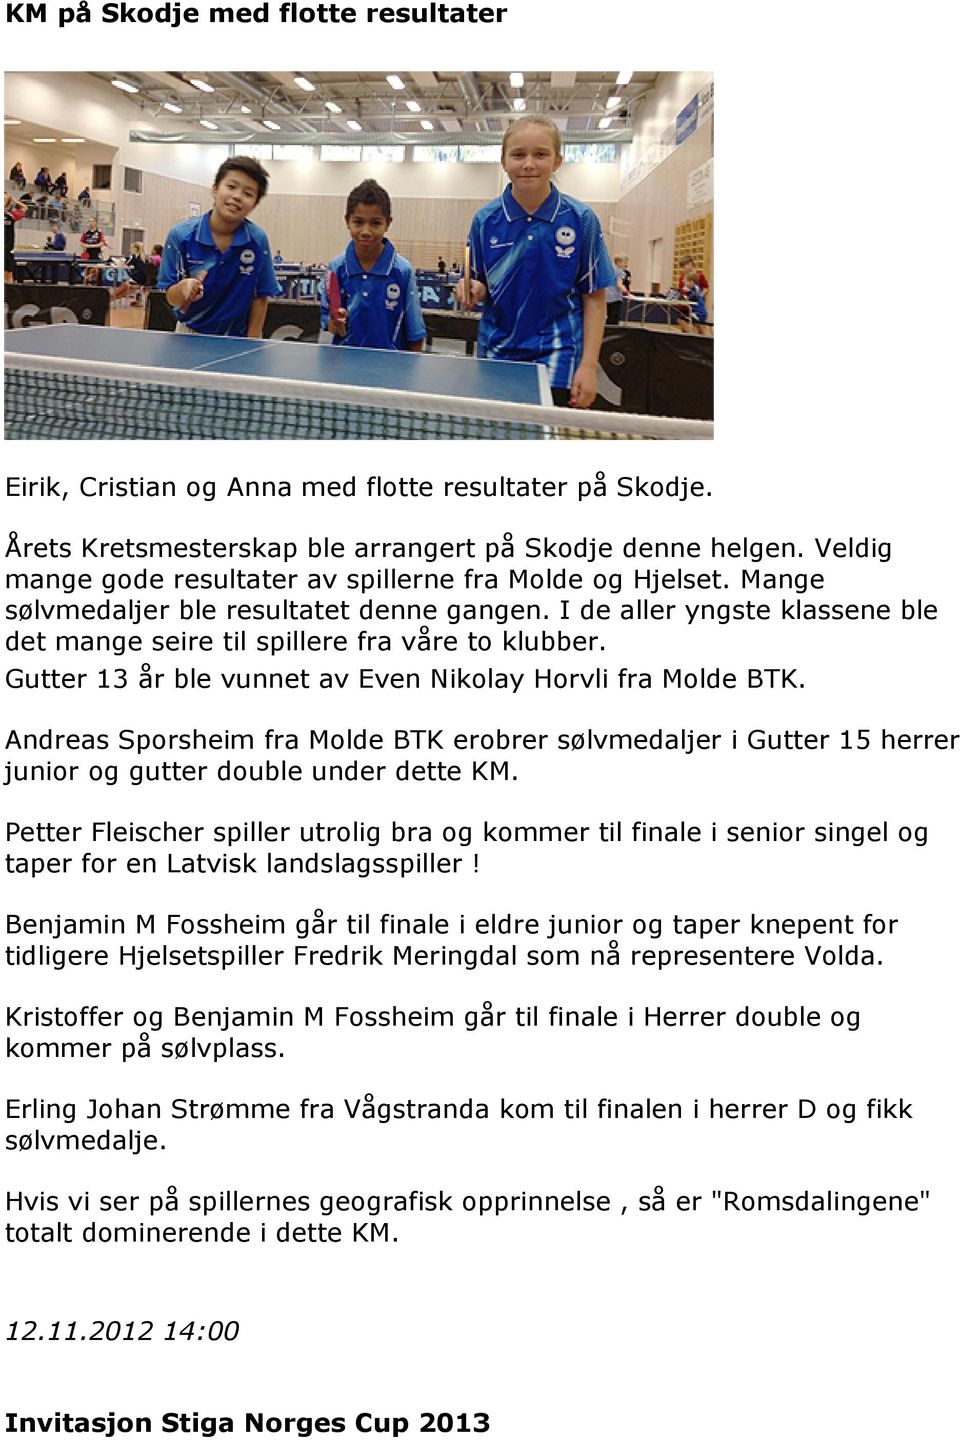 Gutter 13 år ble vunnet av Even Nikolay Horvli fra Molde BTK. Andreas Sporsheim fra Molde BTK erobrer sølvmedaljer i Gutter 15 herrer junior og gutter double under dette KM.